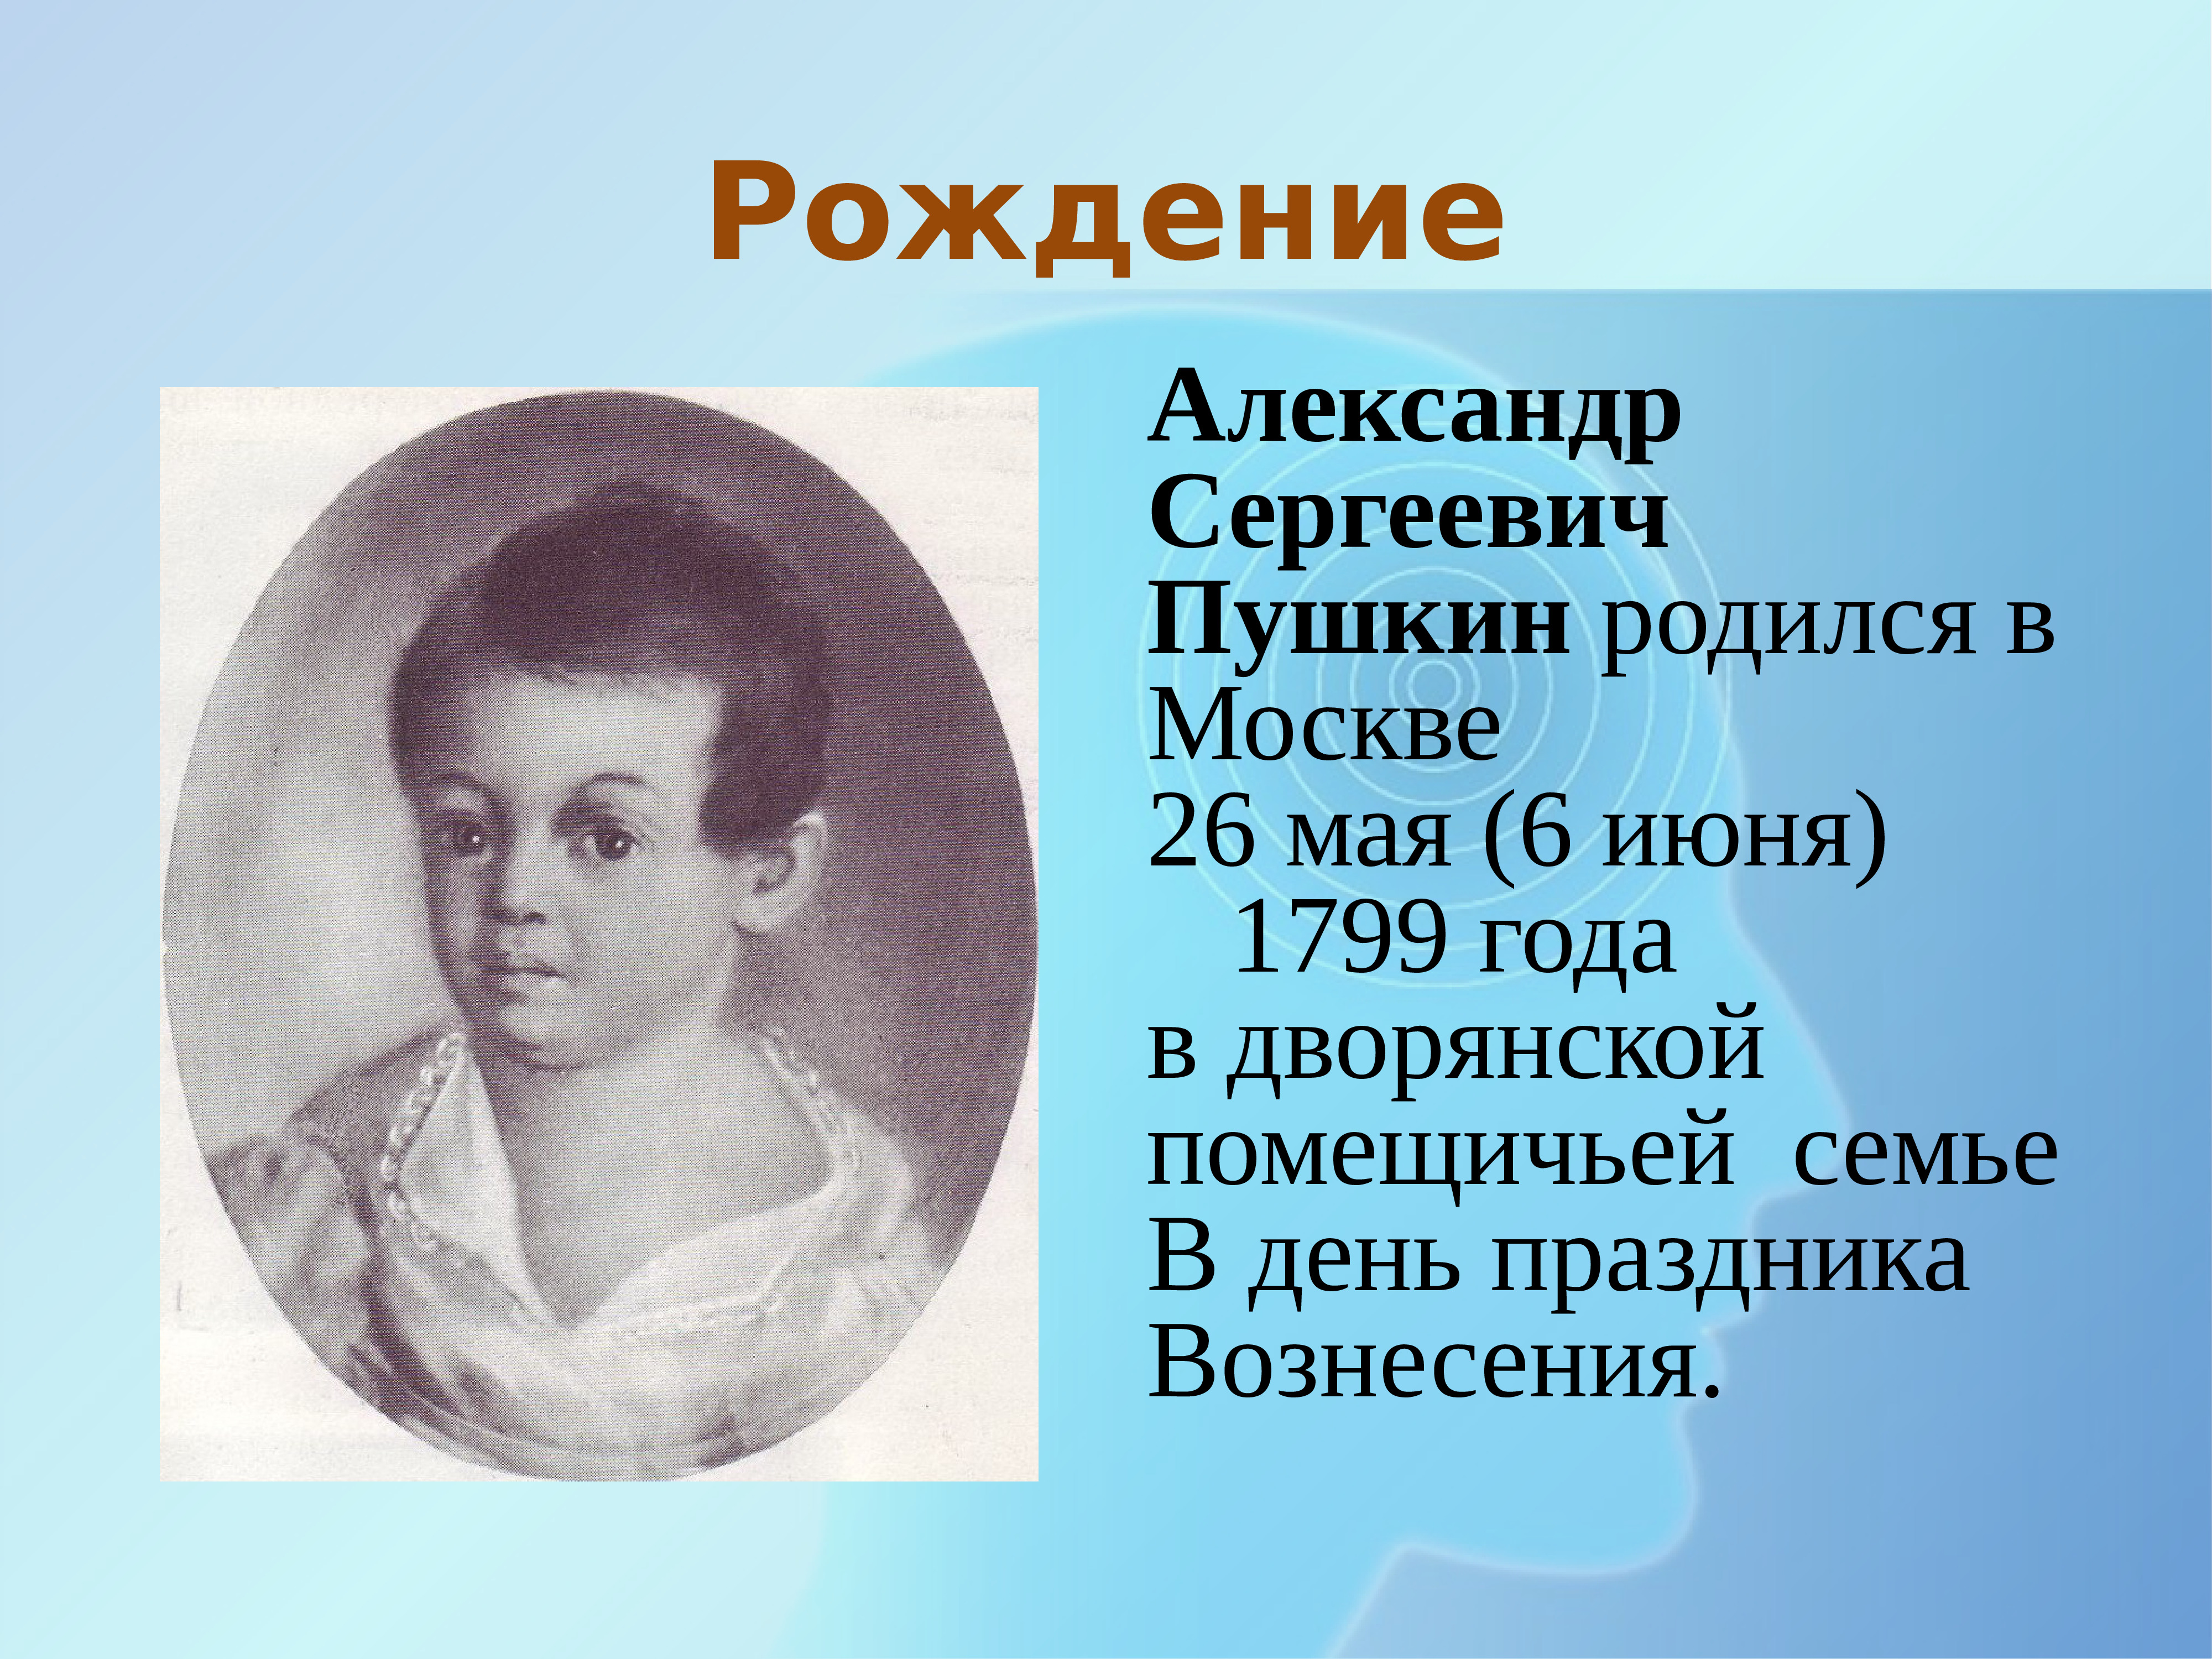 Доклад: Жизнь и творчество Александра Сергеевича Пушкина